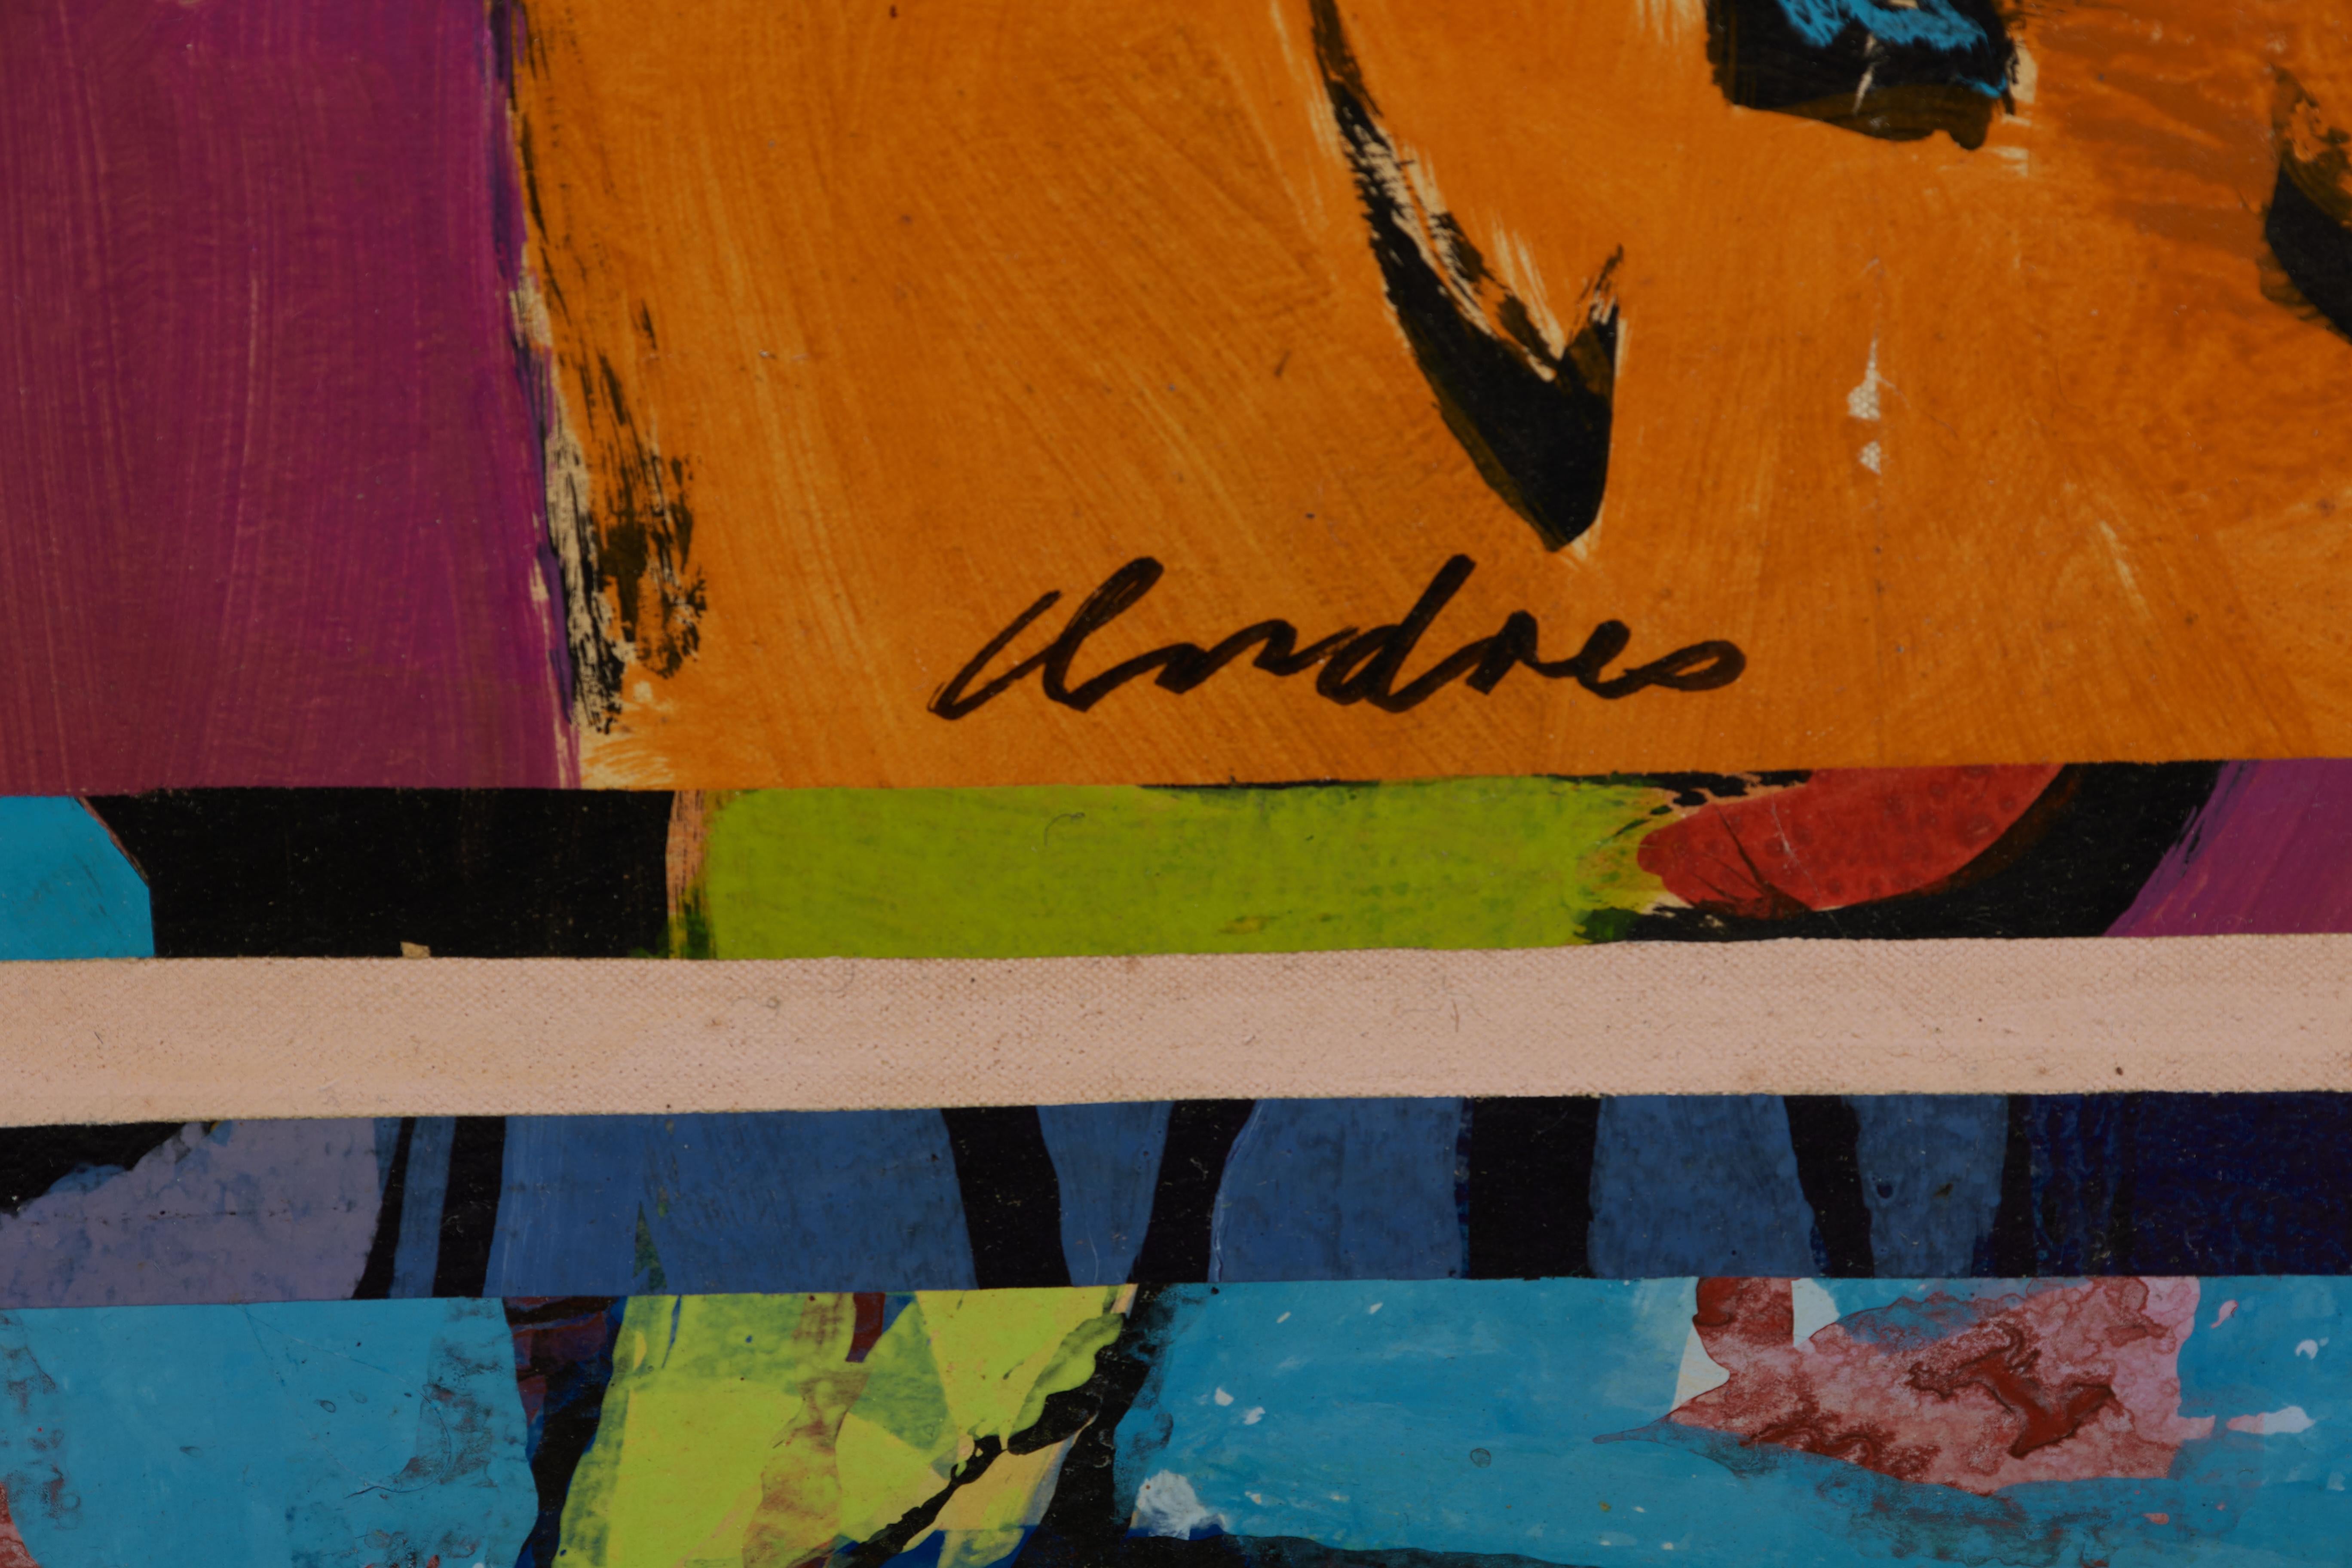 L. S. F. lebendige abstrakte expressionistische Malerei des Künstlers der Cleveland School (Abstrakter Expressionismus), Painting, von Richard Andres